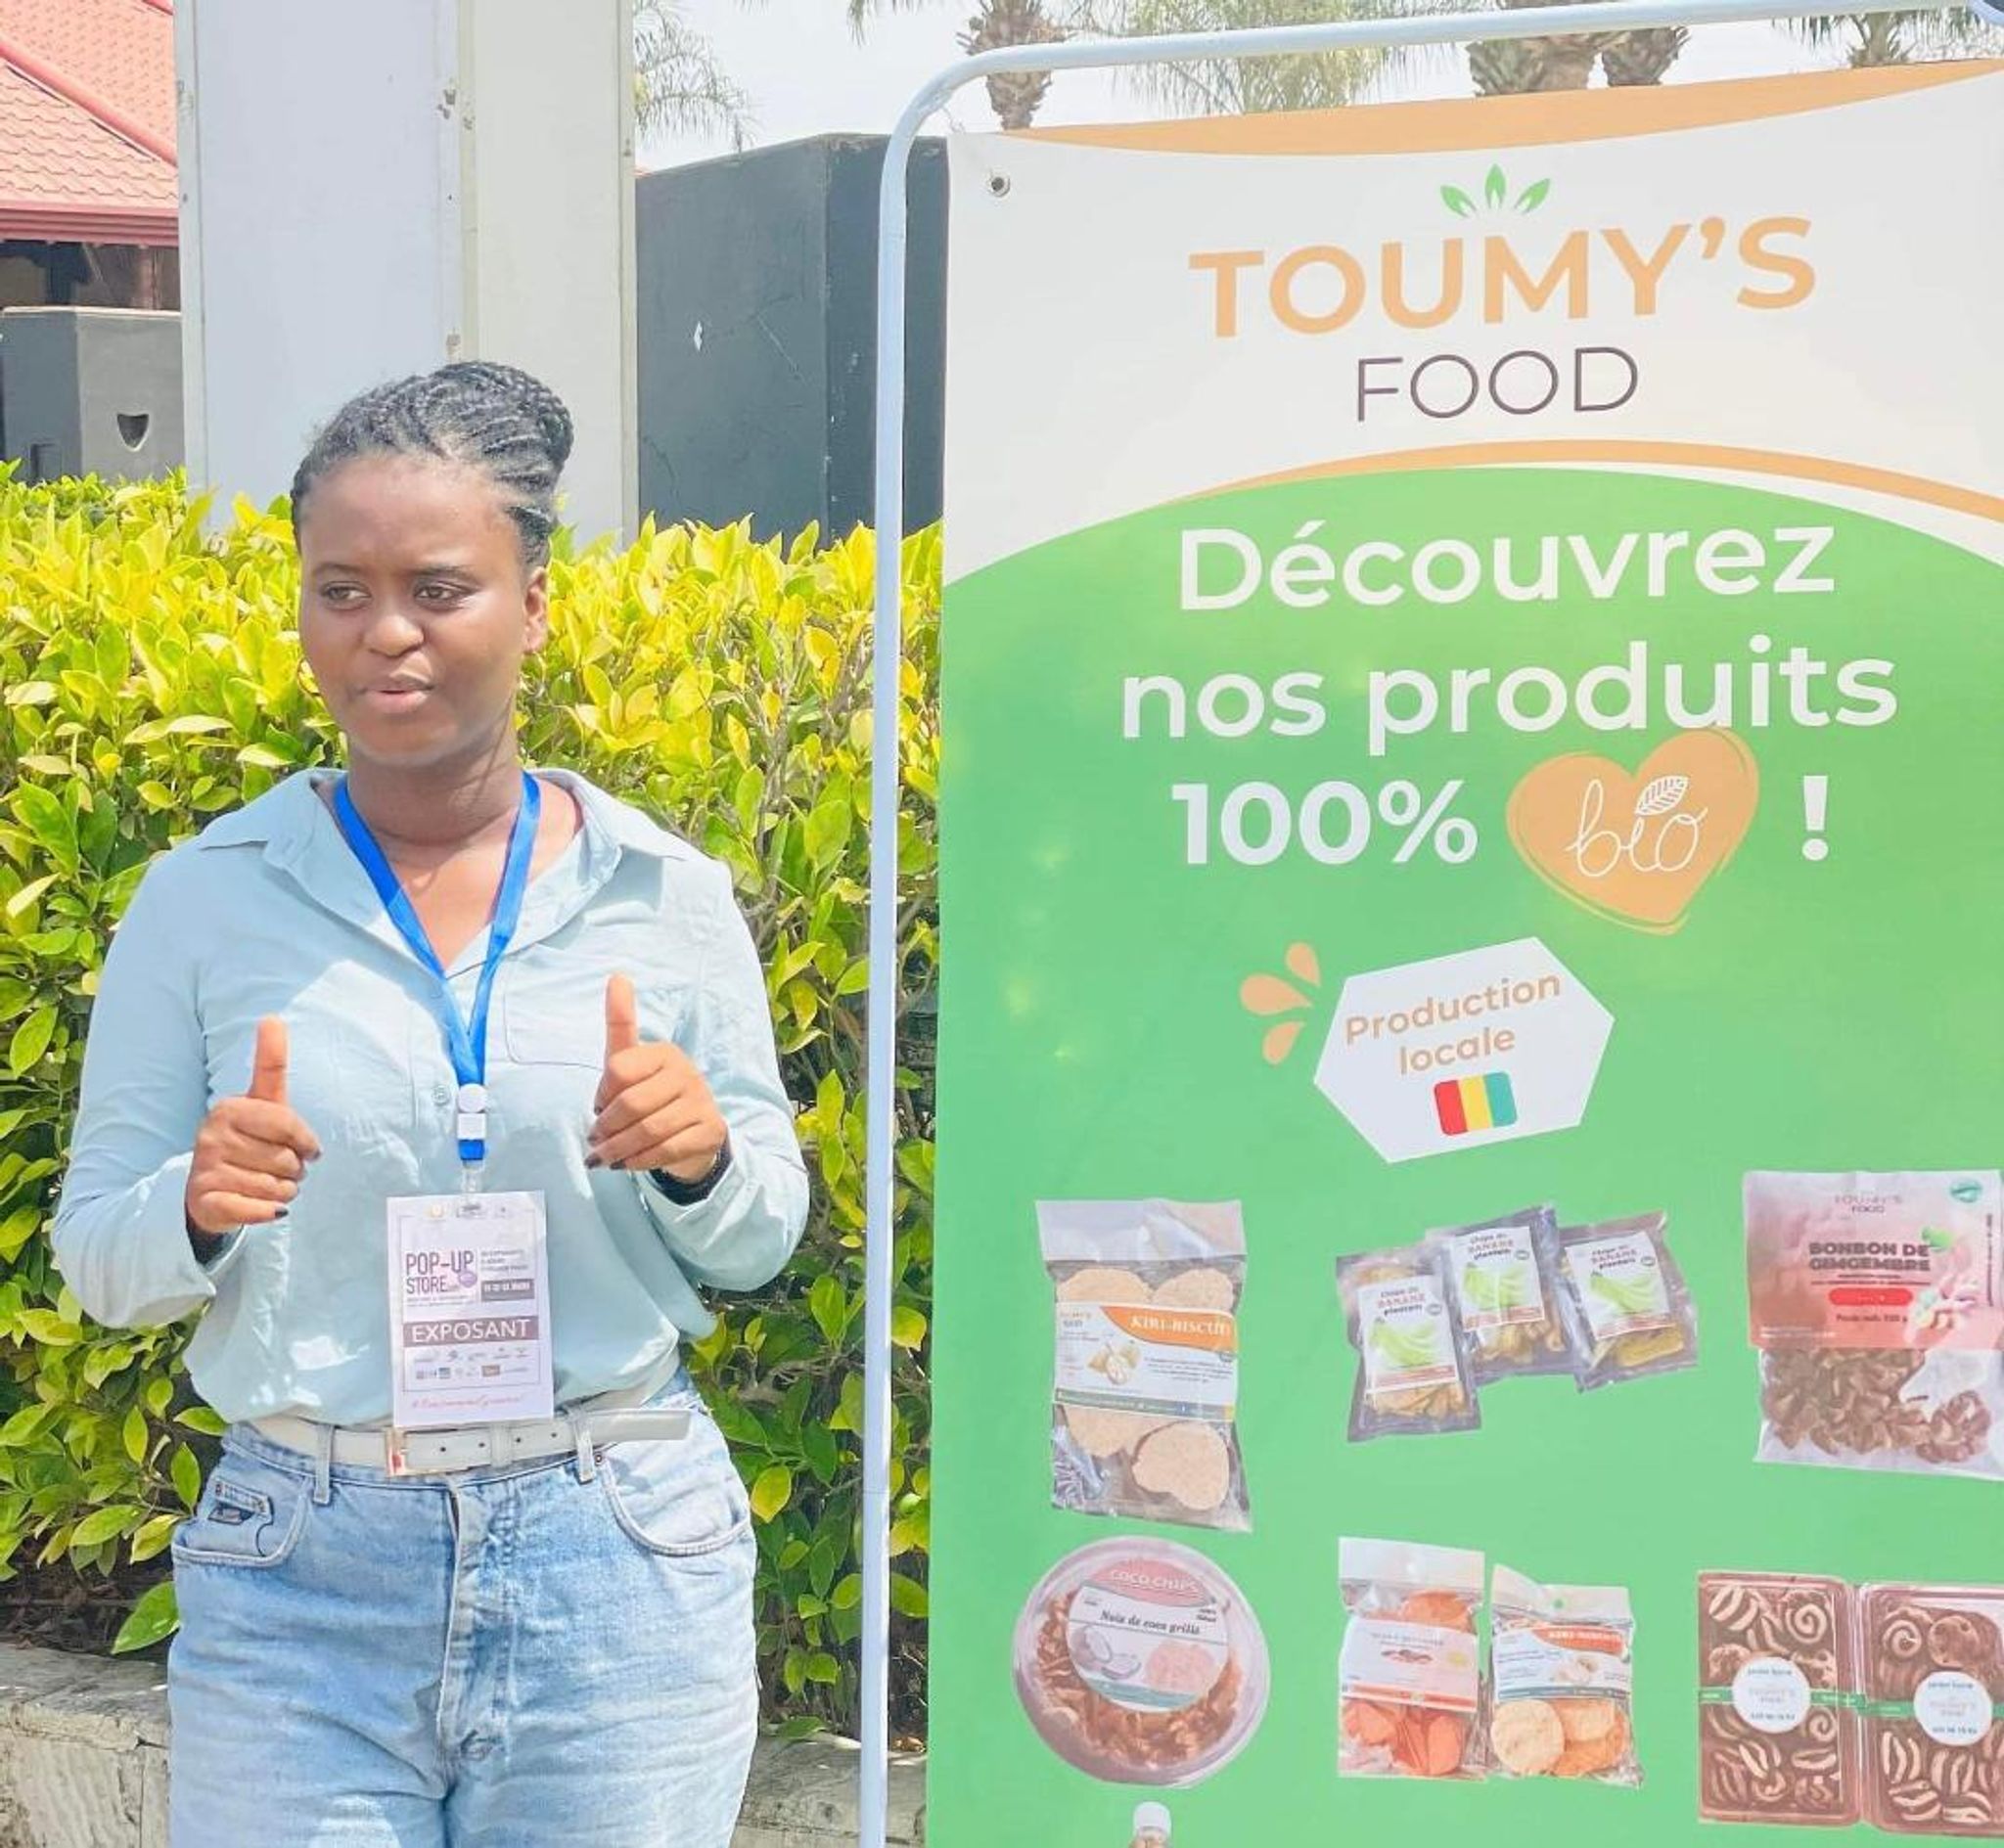 POLYCOPIÉ - La Guinéenne Oumou Koultoumy Diallo (24 ans), a franchi le pas de l'entrepreneuriat, en créant une start-up spécialisée dans la transformation agroalimentaire basée à Conakry. Foto: Oumou Koultoumy Diallo/Photo privée autorisée/dpa